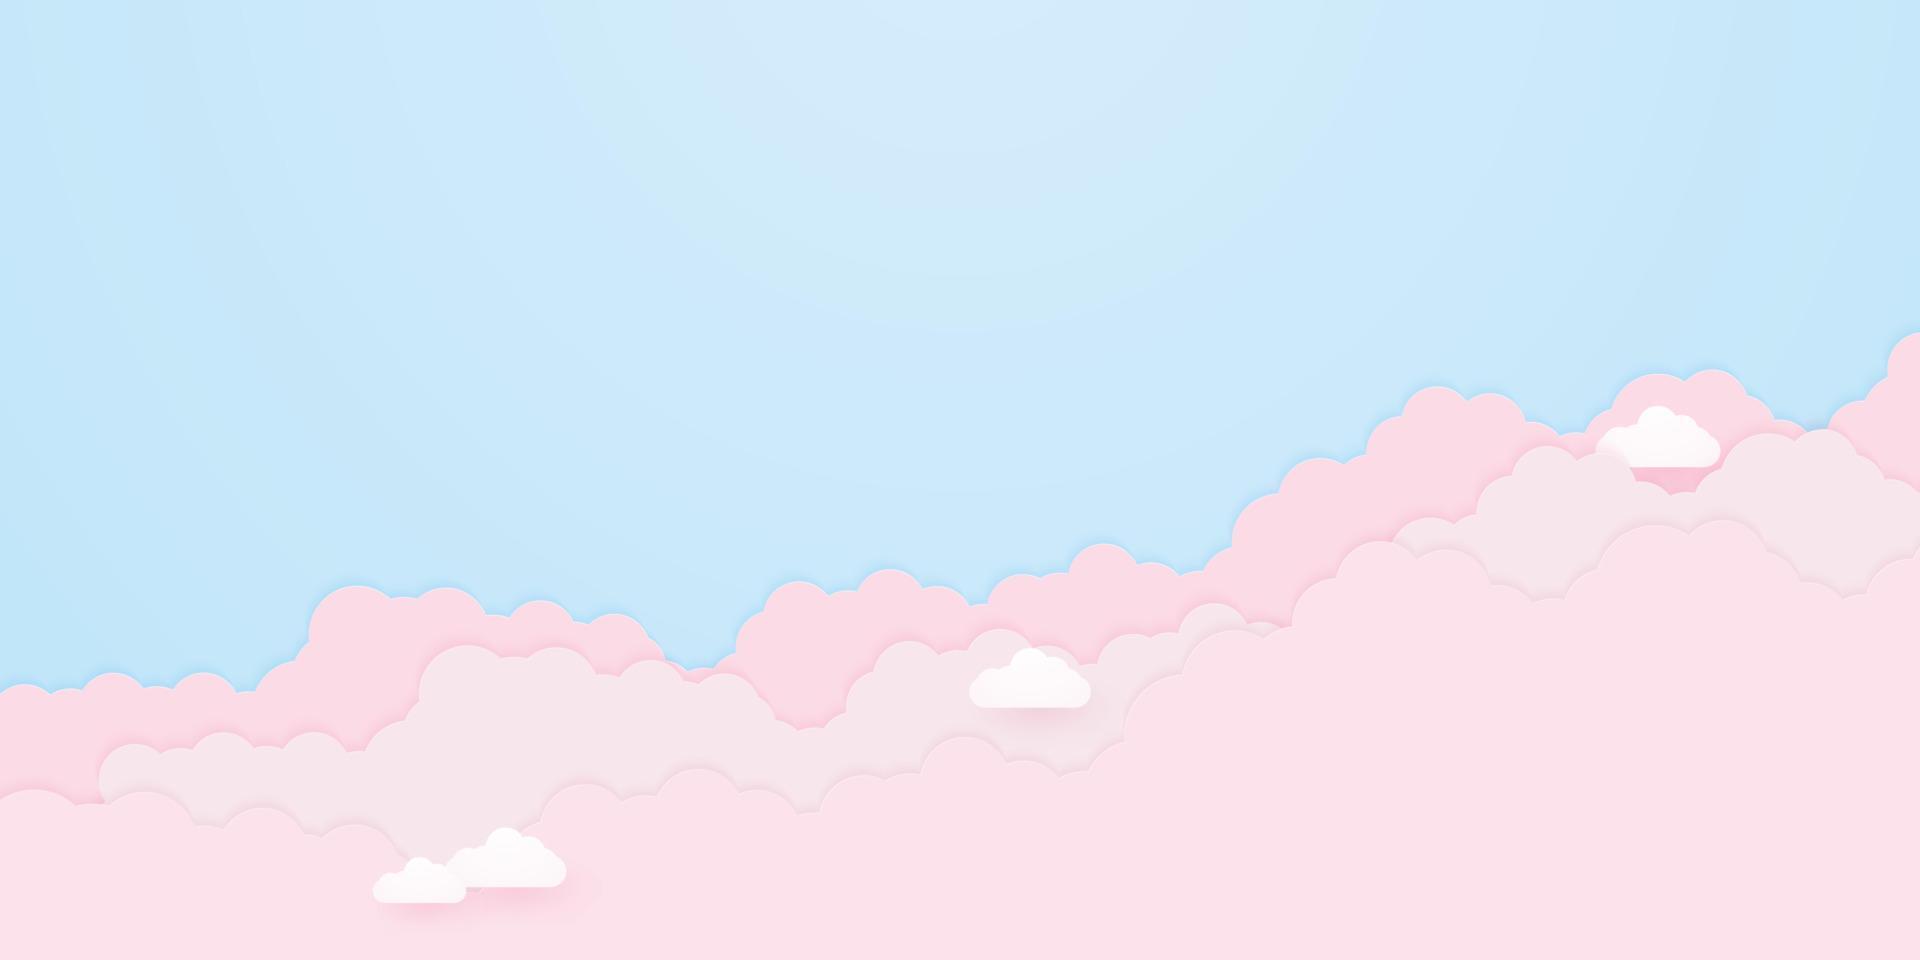 Cloudscape, cielo azul con nubes rosadas, estilo de arte en papel. vector